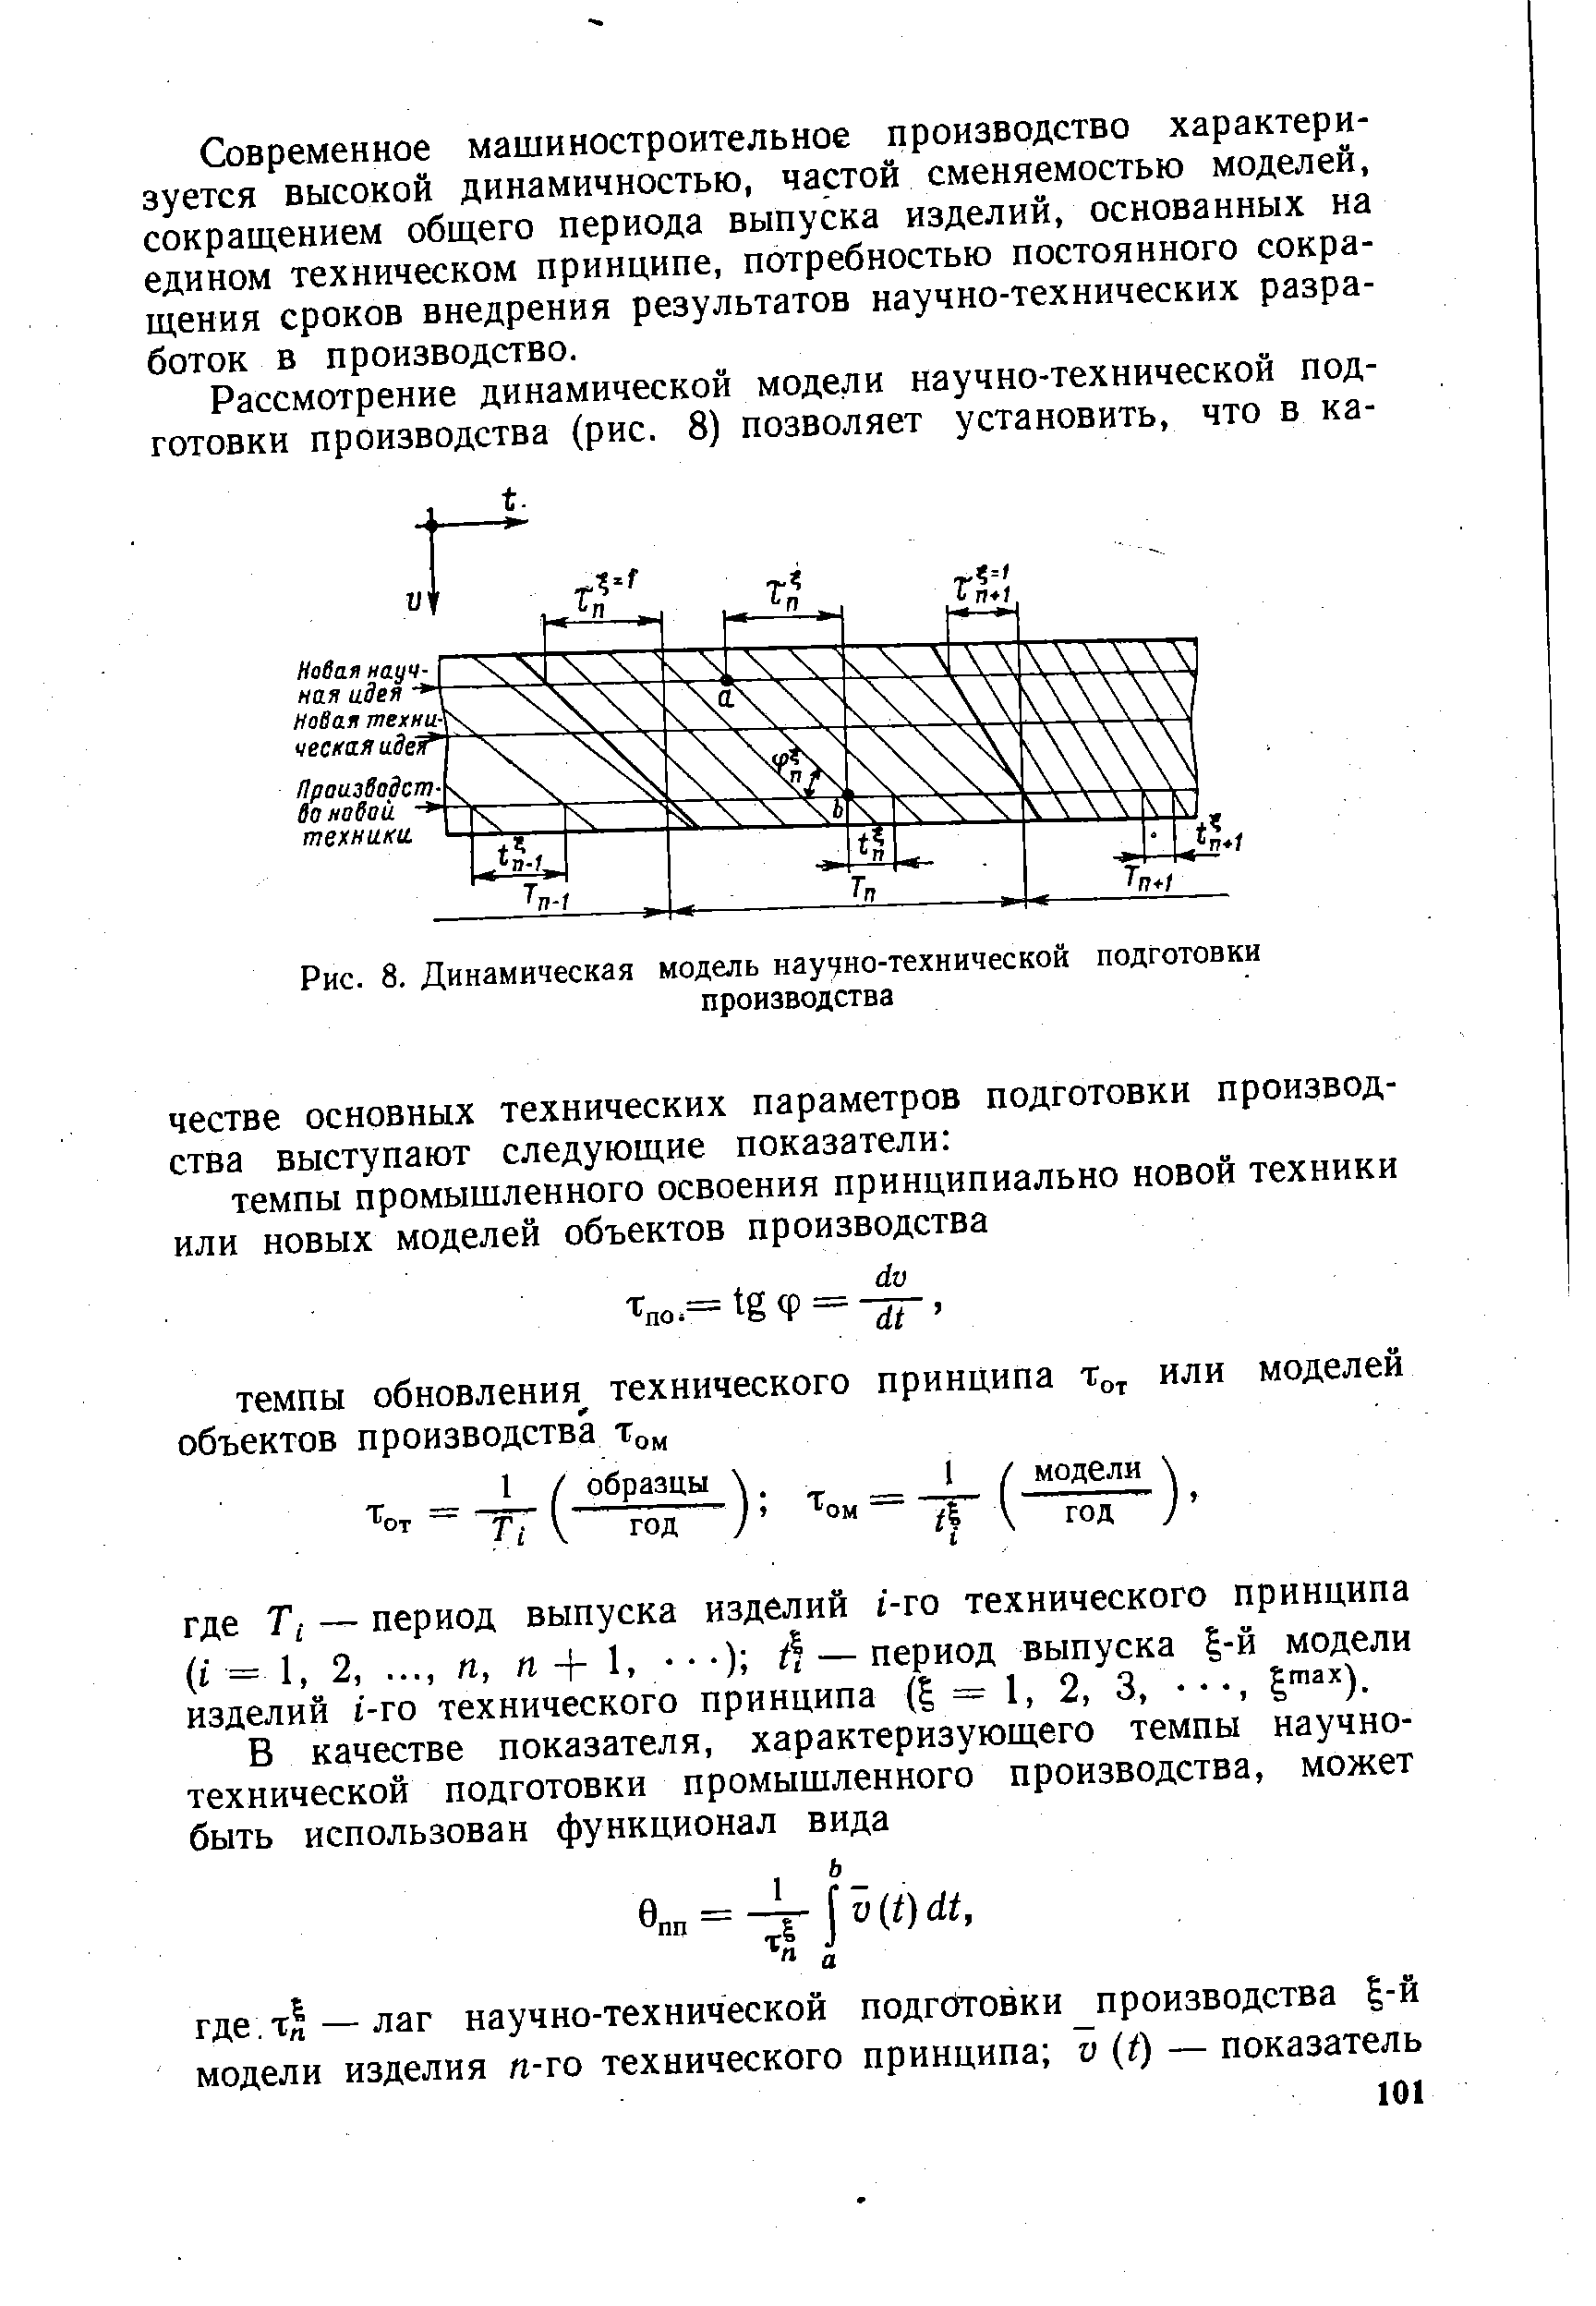 Рис. 8. <a href="/info/1932">Динамическая модель</a> научно-технической подготовки производства
